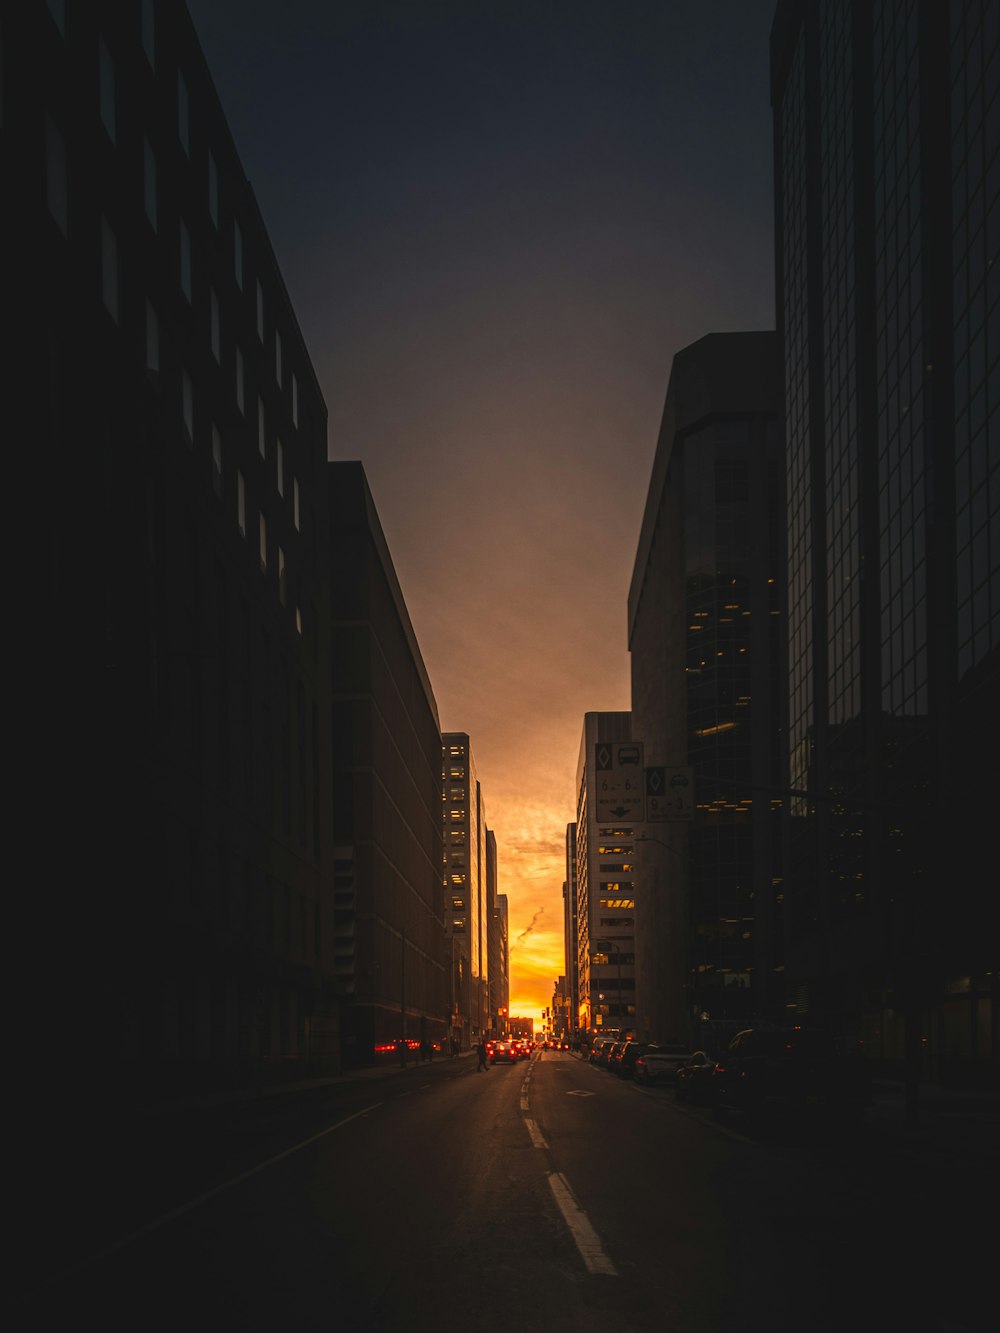 Sehen Sie sich die Fotografie der Straße zwischen den Hochhäusern bei Sonnenaufgang an